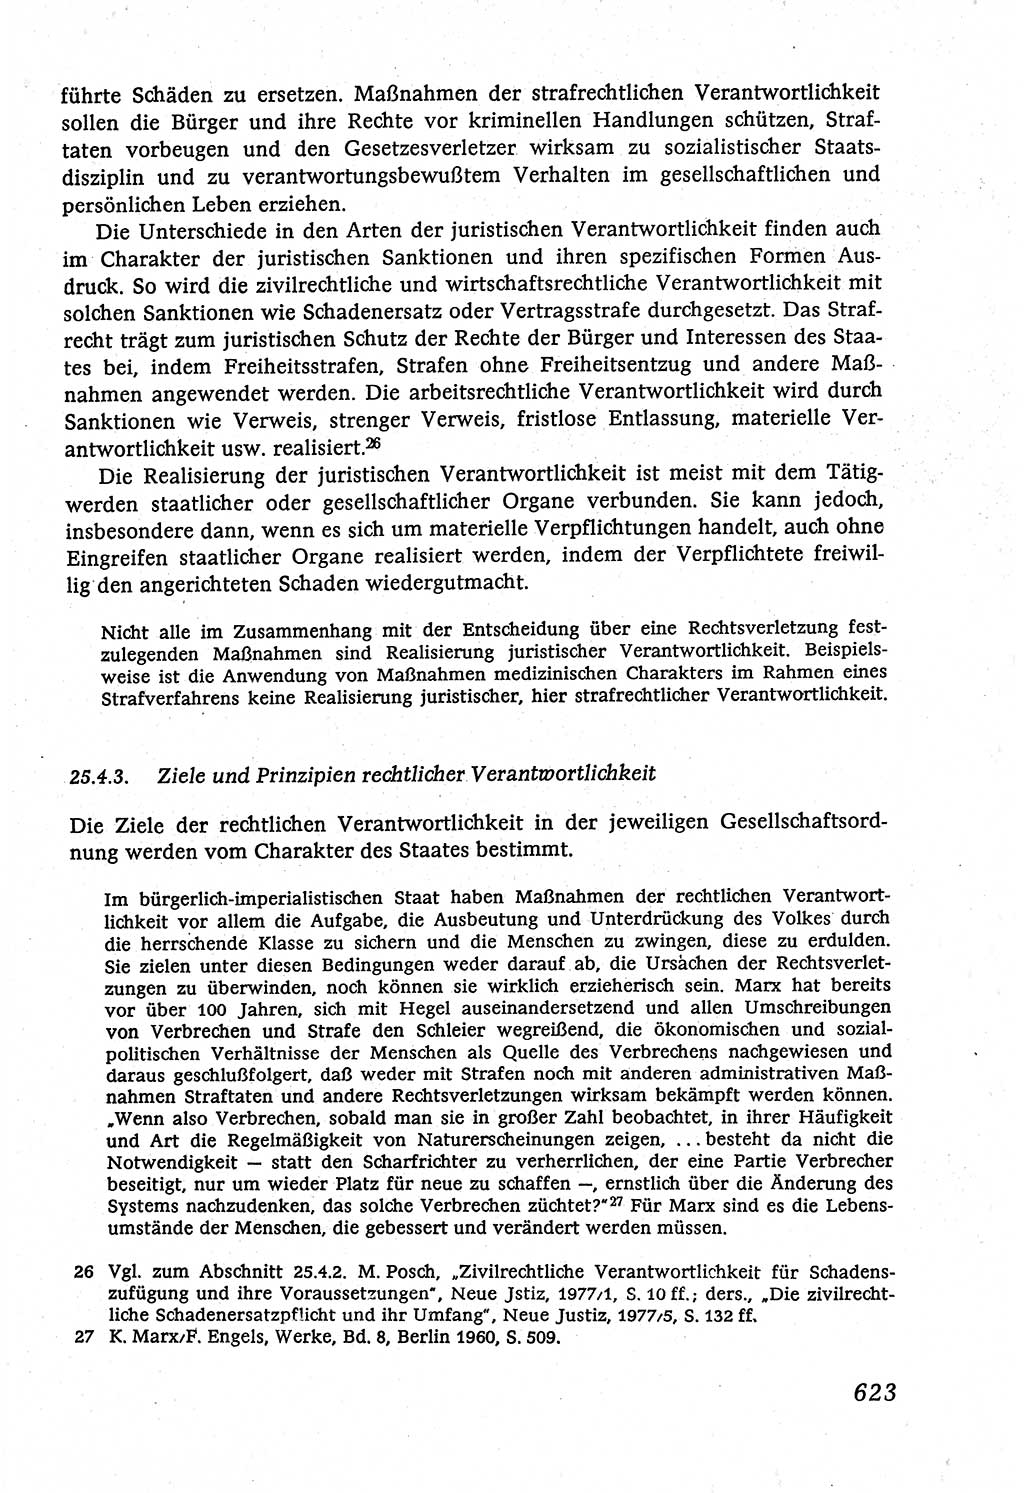 Marxistisch-leninistische (ML) Staats- und Rechtstheorie [Deutsche Demokratische Republik (DDR)], Lehrbuch 1980, Seite 623 (ML St.-R.-Th. DDR Lb. 1980, S. 623)